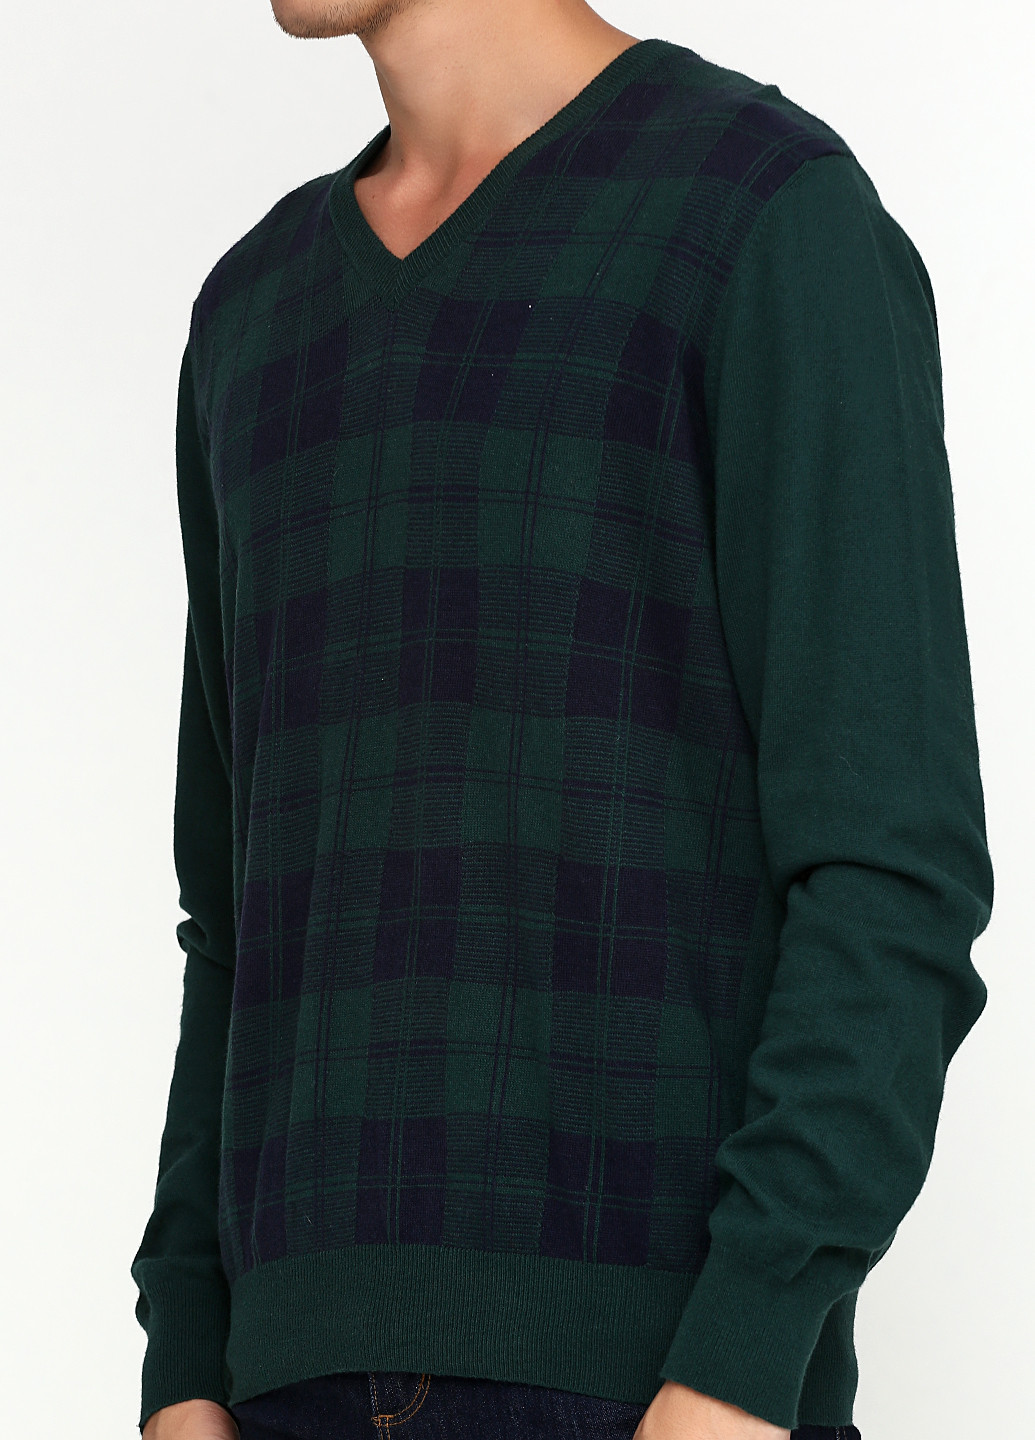 Зеленый демисезонный пуловер пуловер Playlife